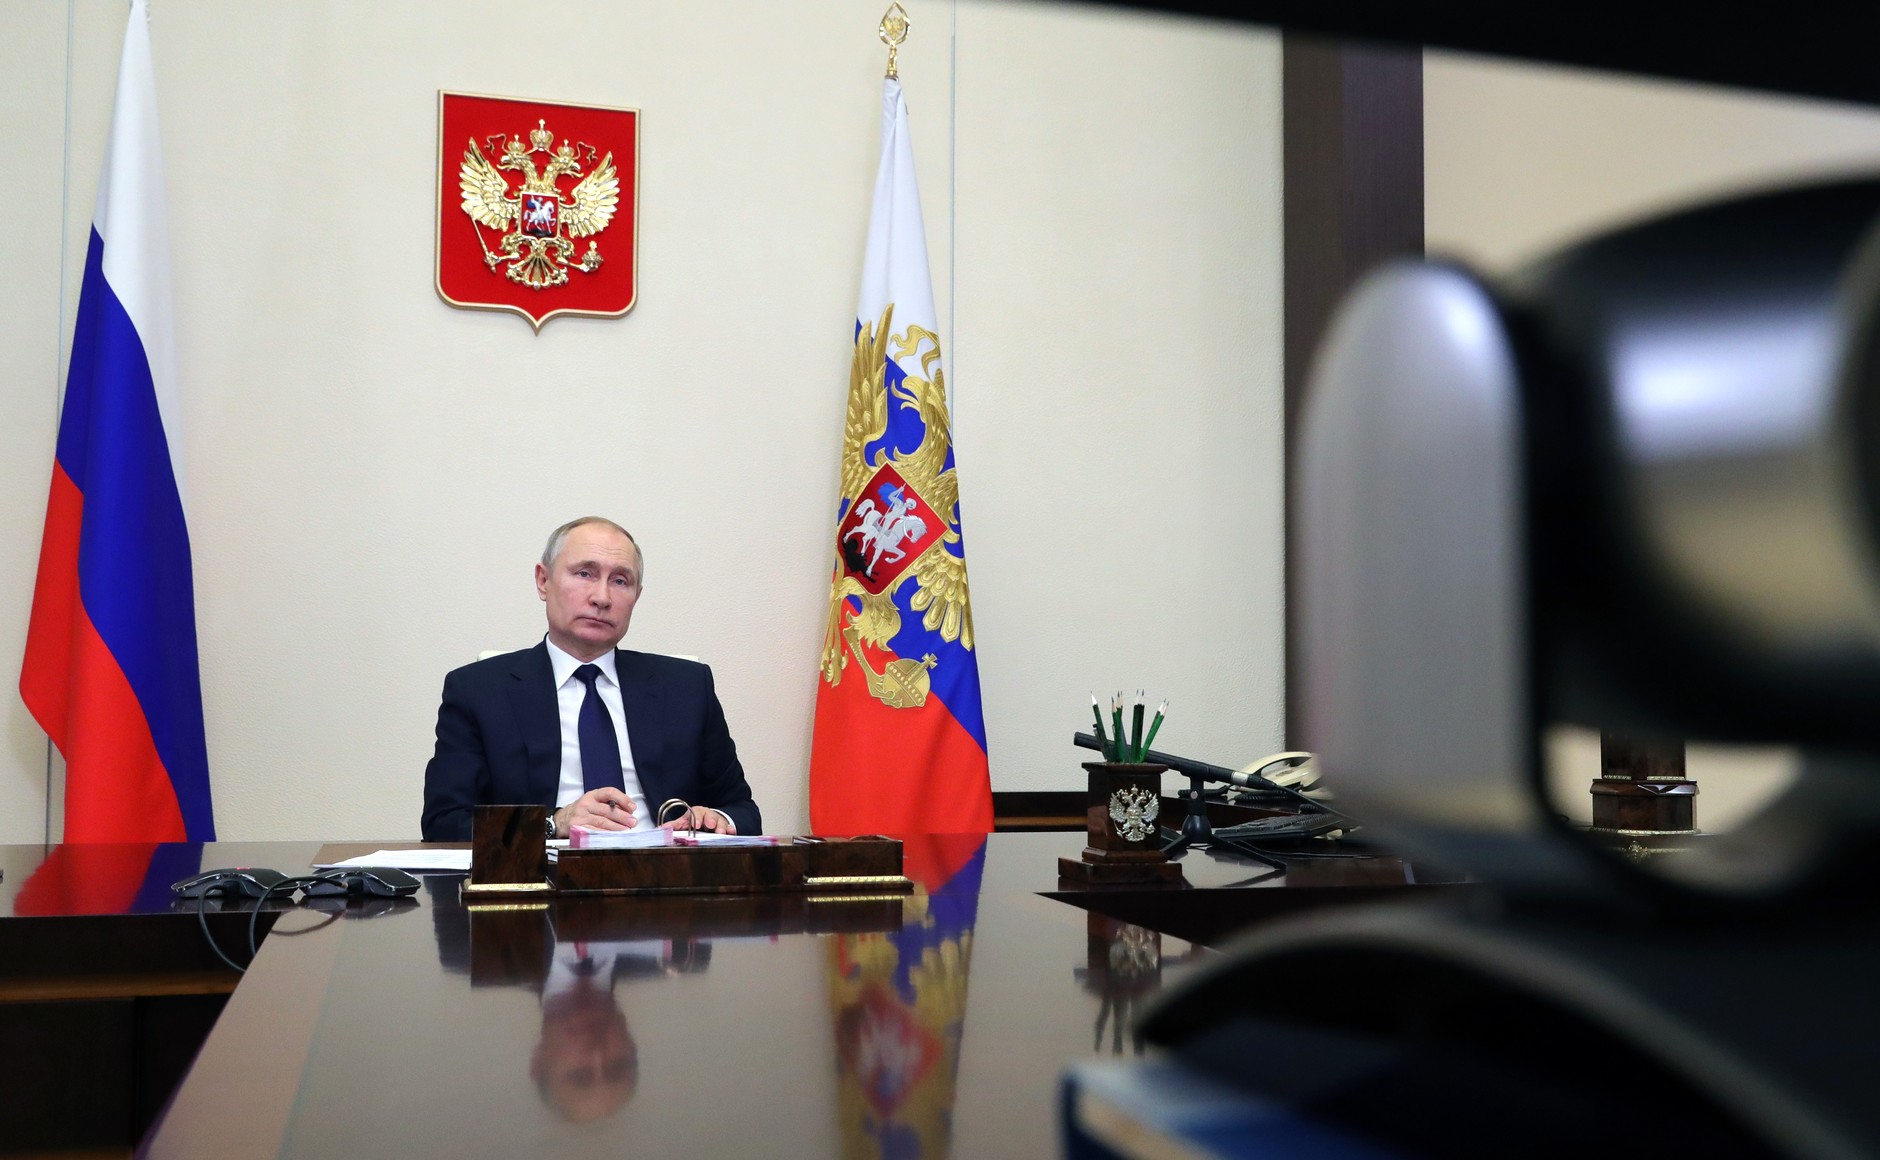 Путин и Лукашенко провели переговоры по телефону